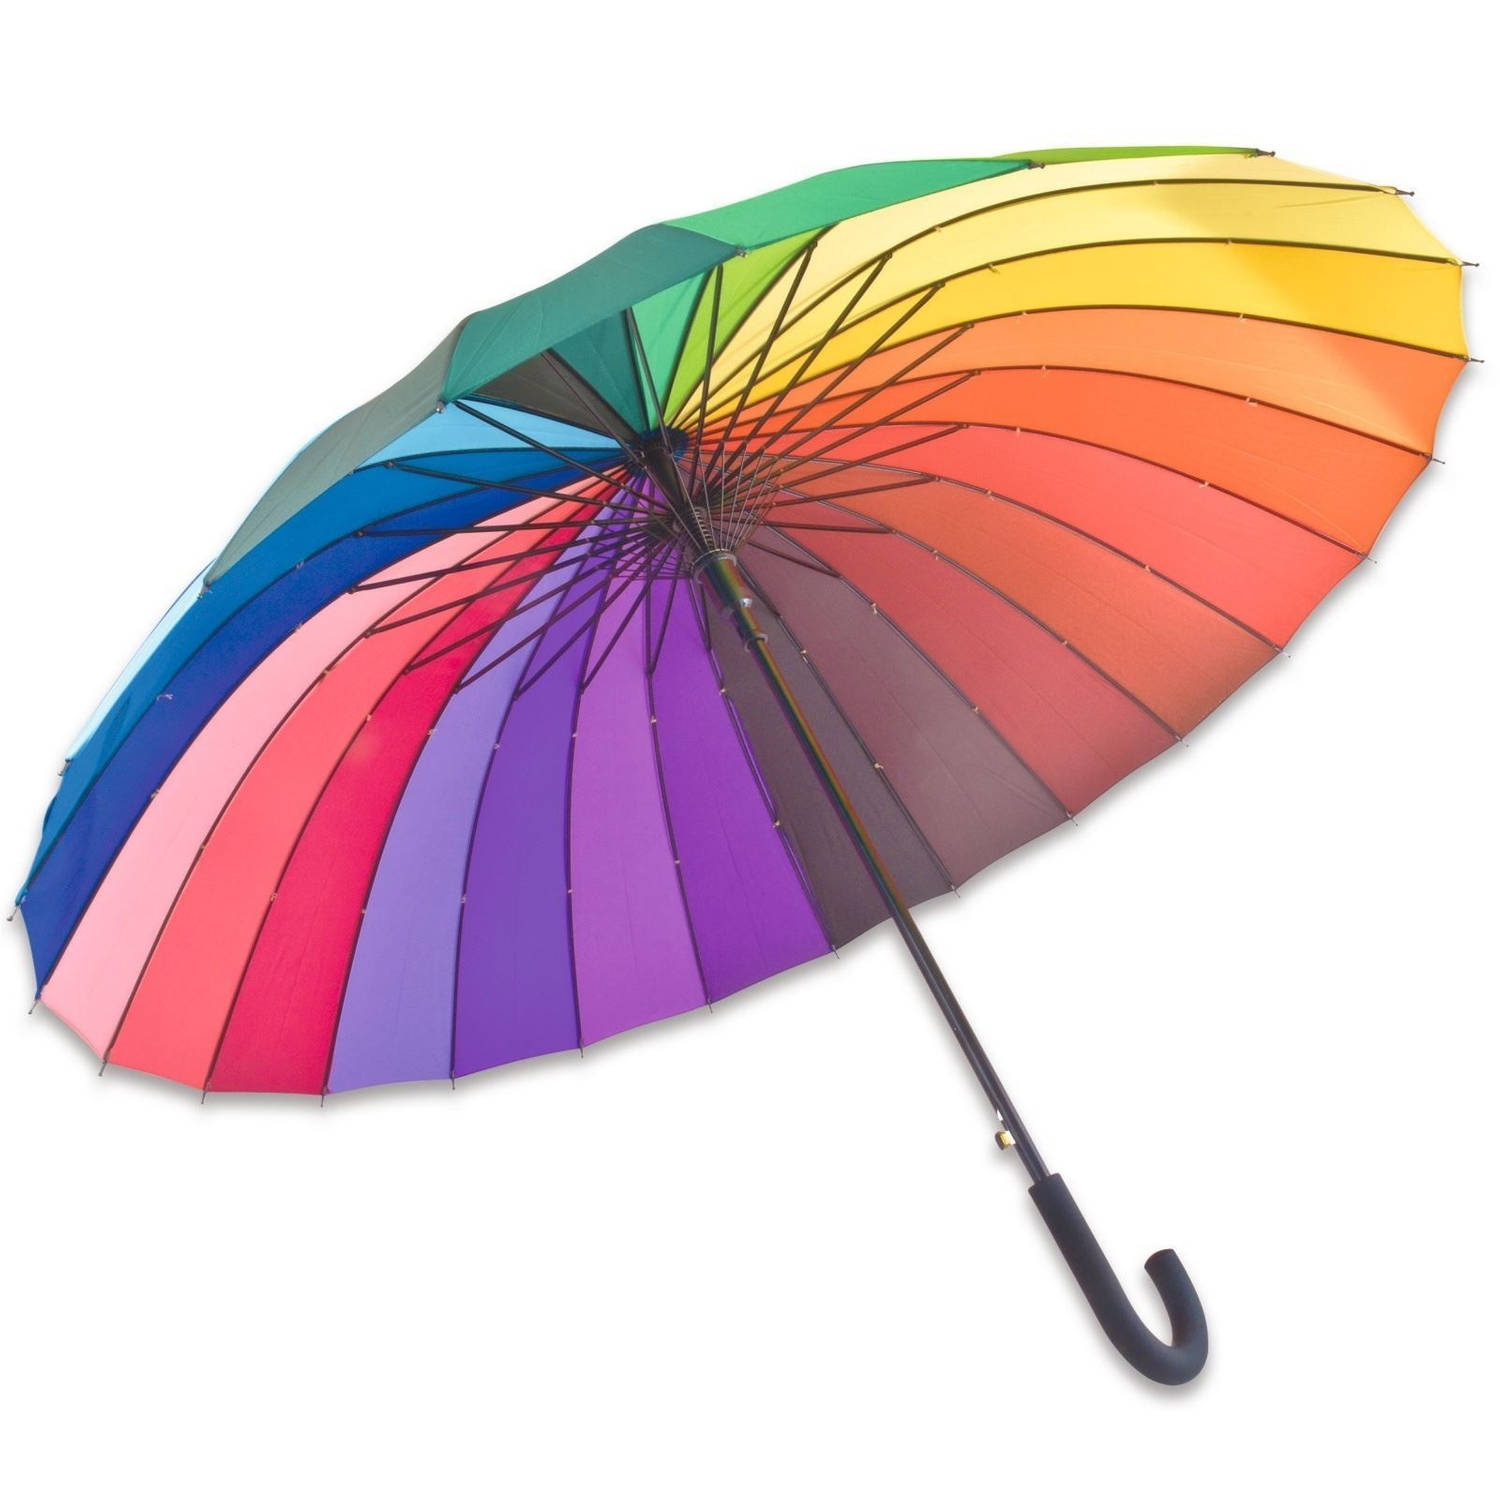 Free and Easy Paraplu Piove Automatisch Krom Handvat 98 Cm online kopen